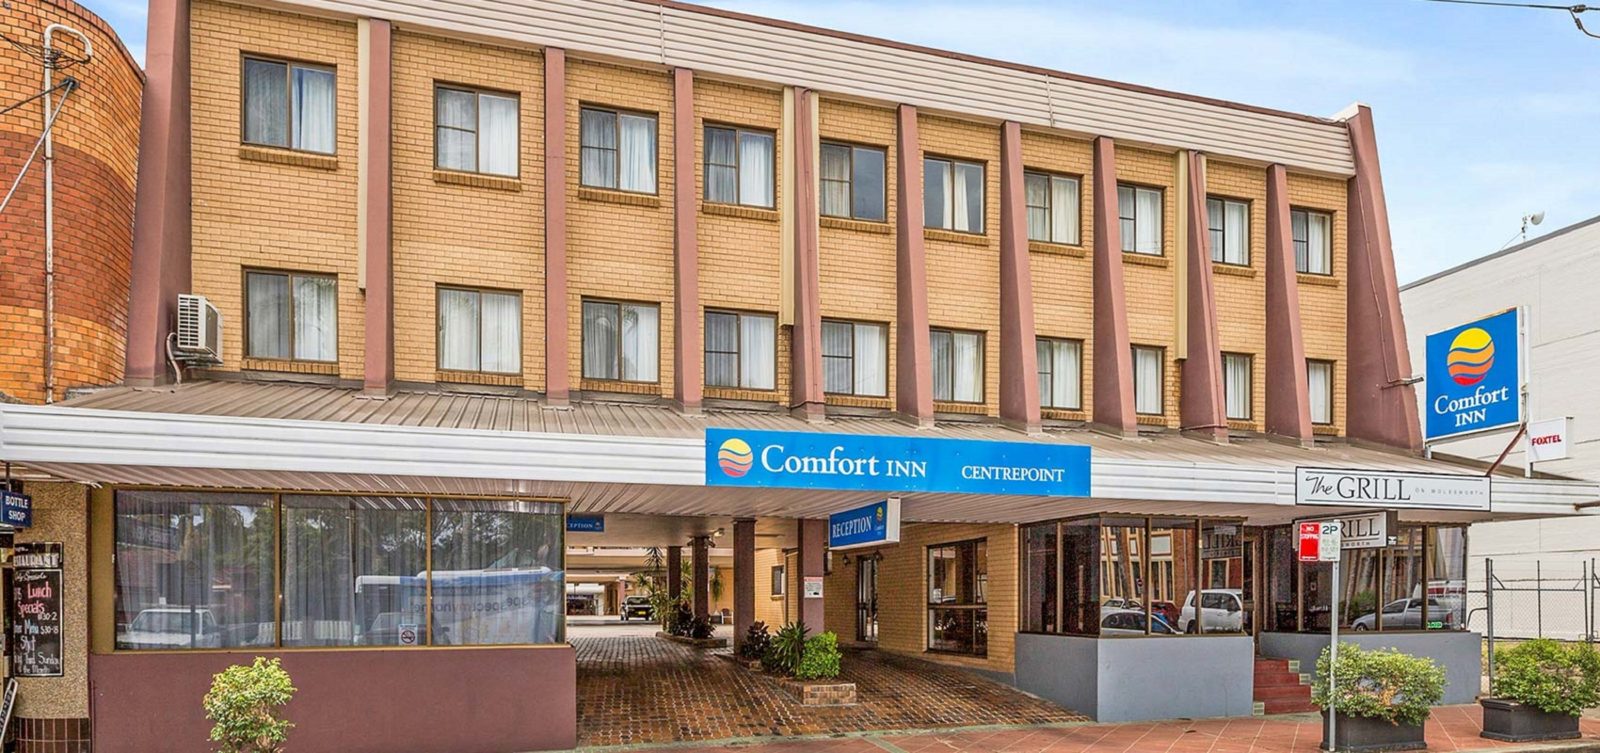 Comfort Inn Centrepoint